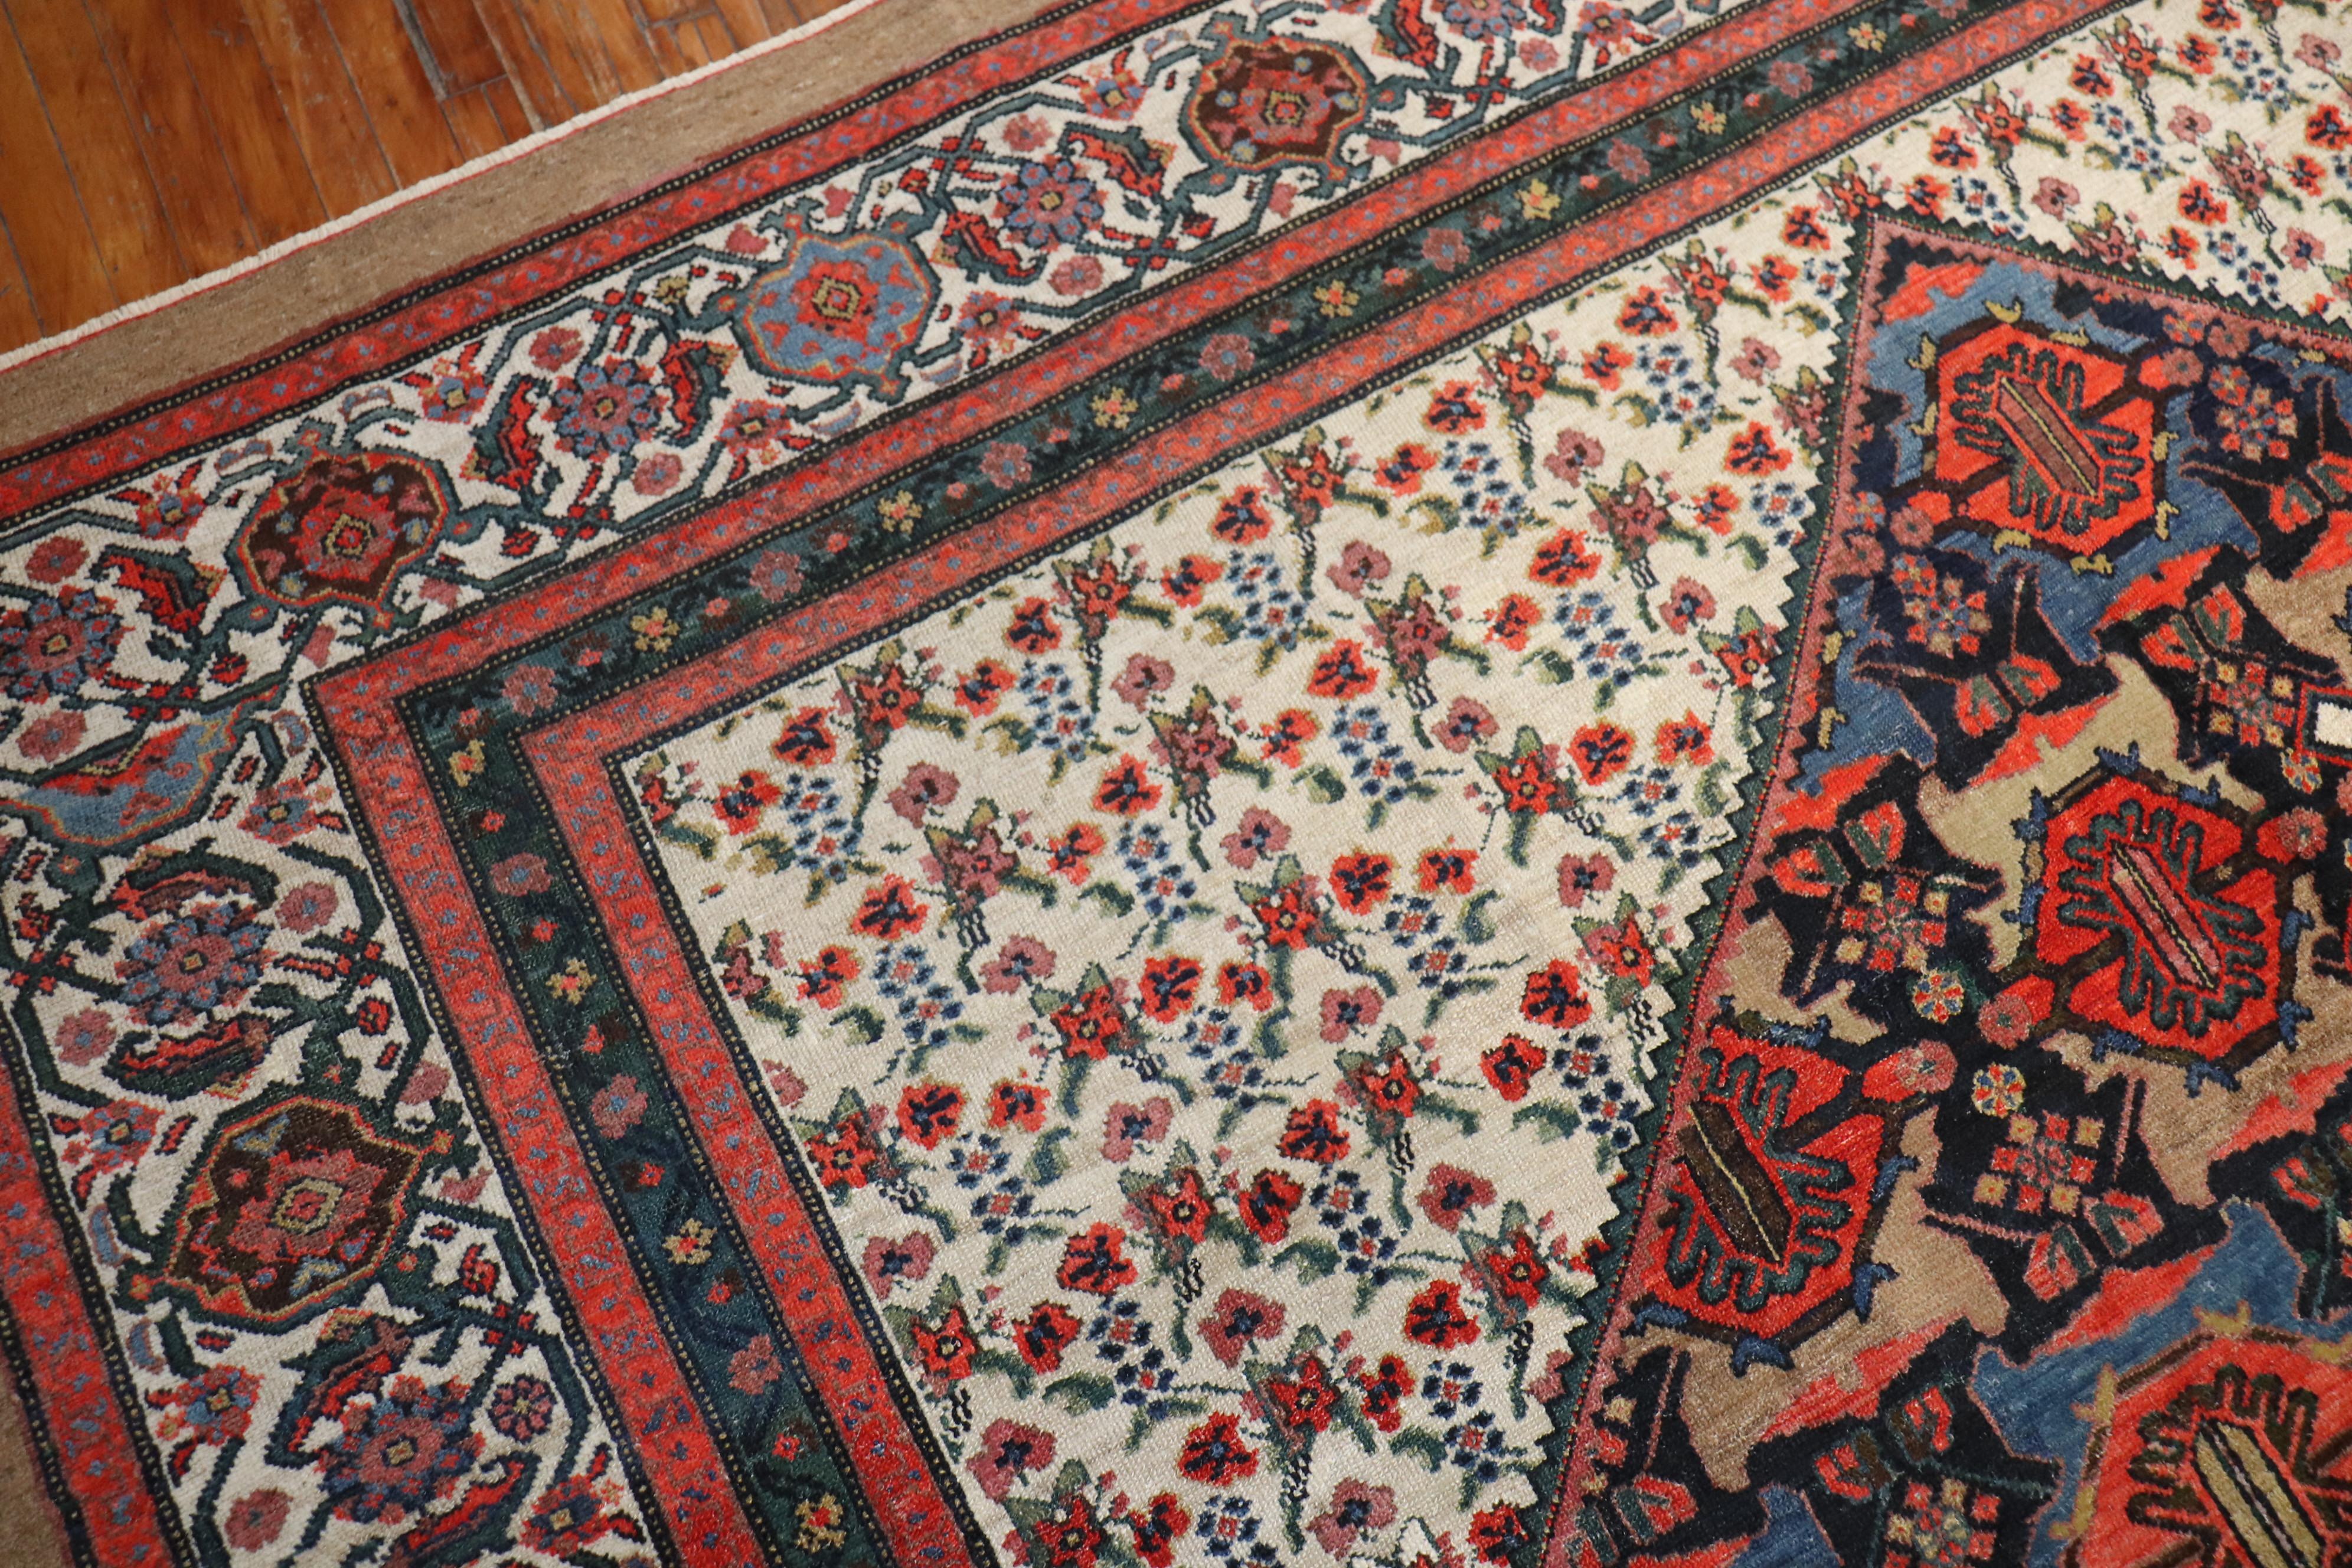 Wool Dramatic Persian Hamedan Serab Decorative Square Room Rug For Sale